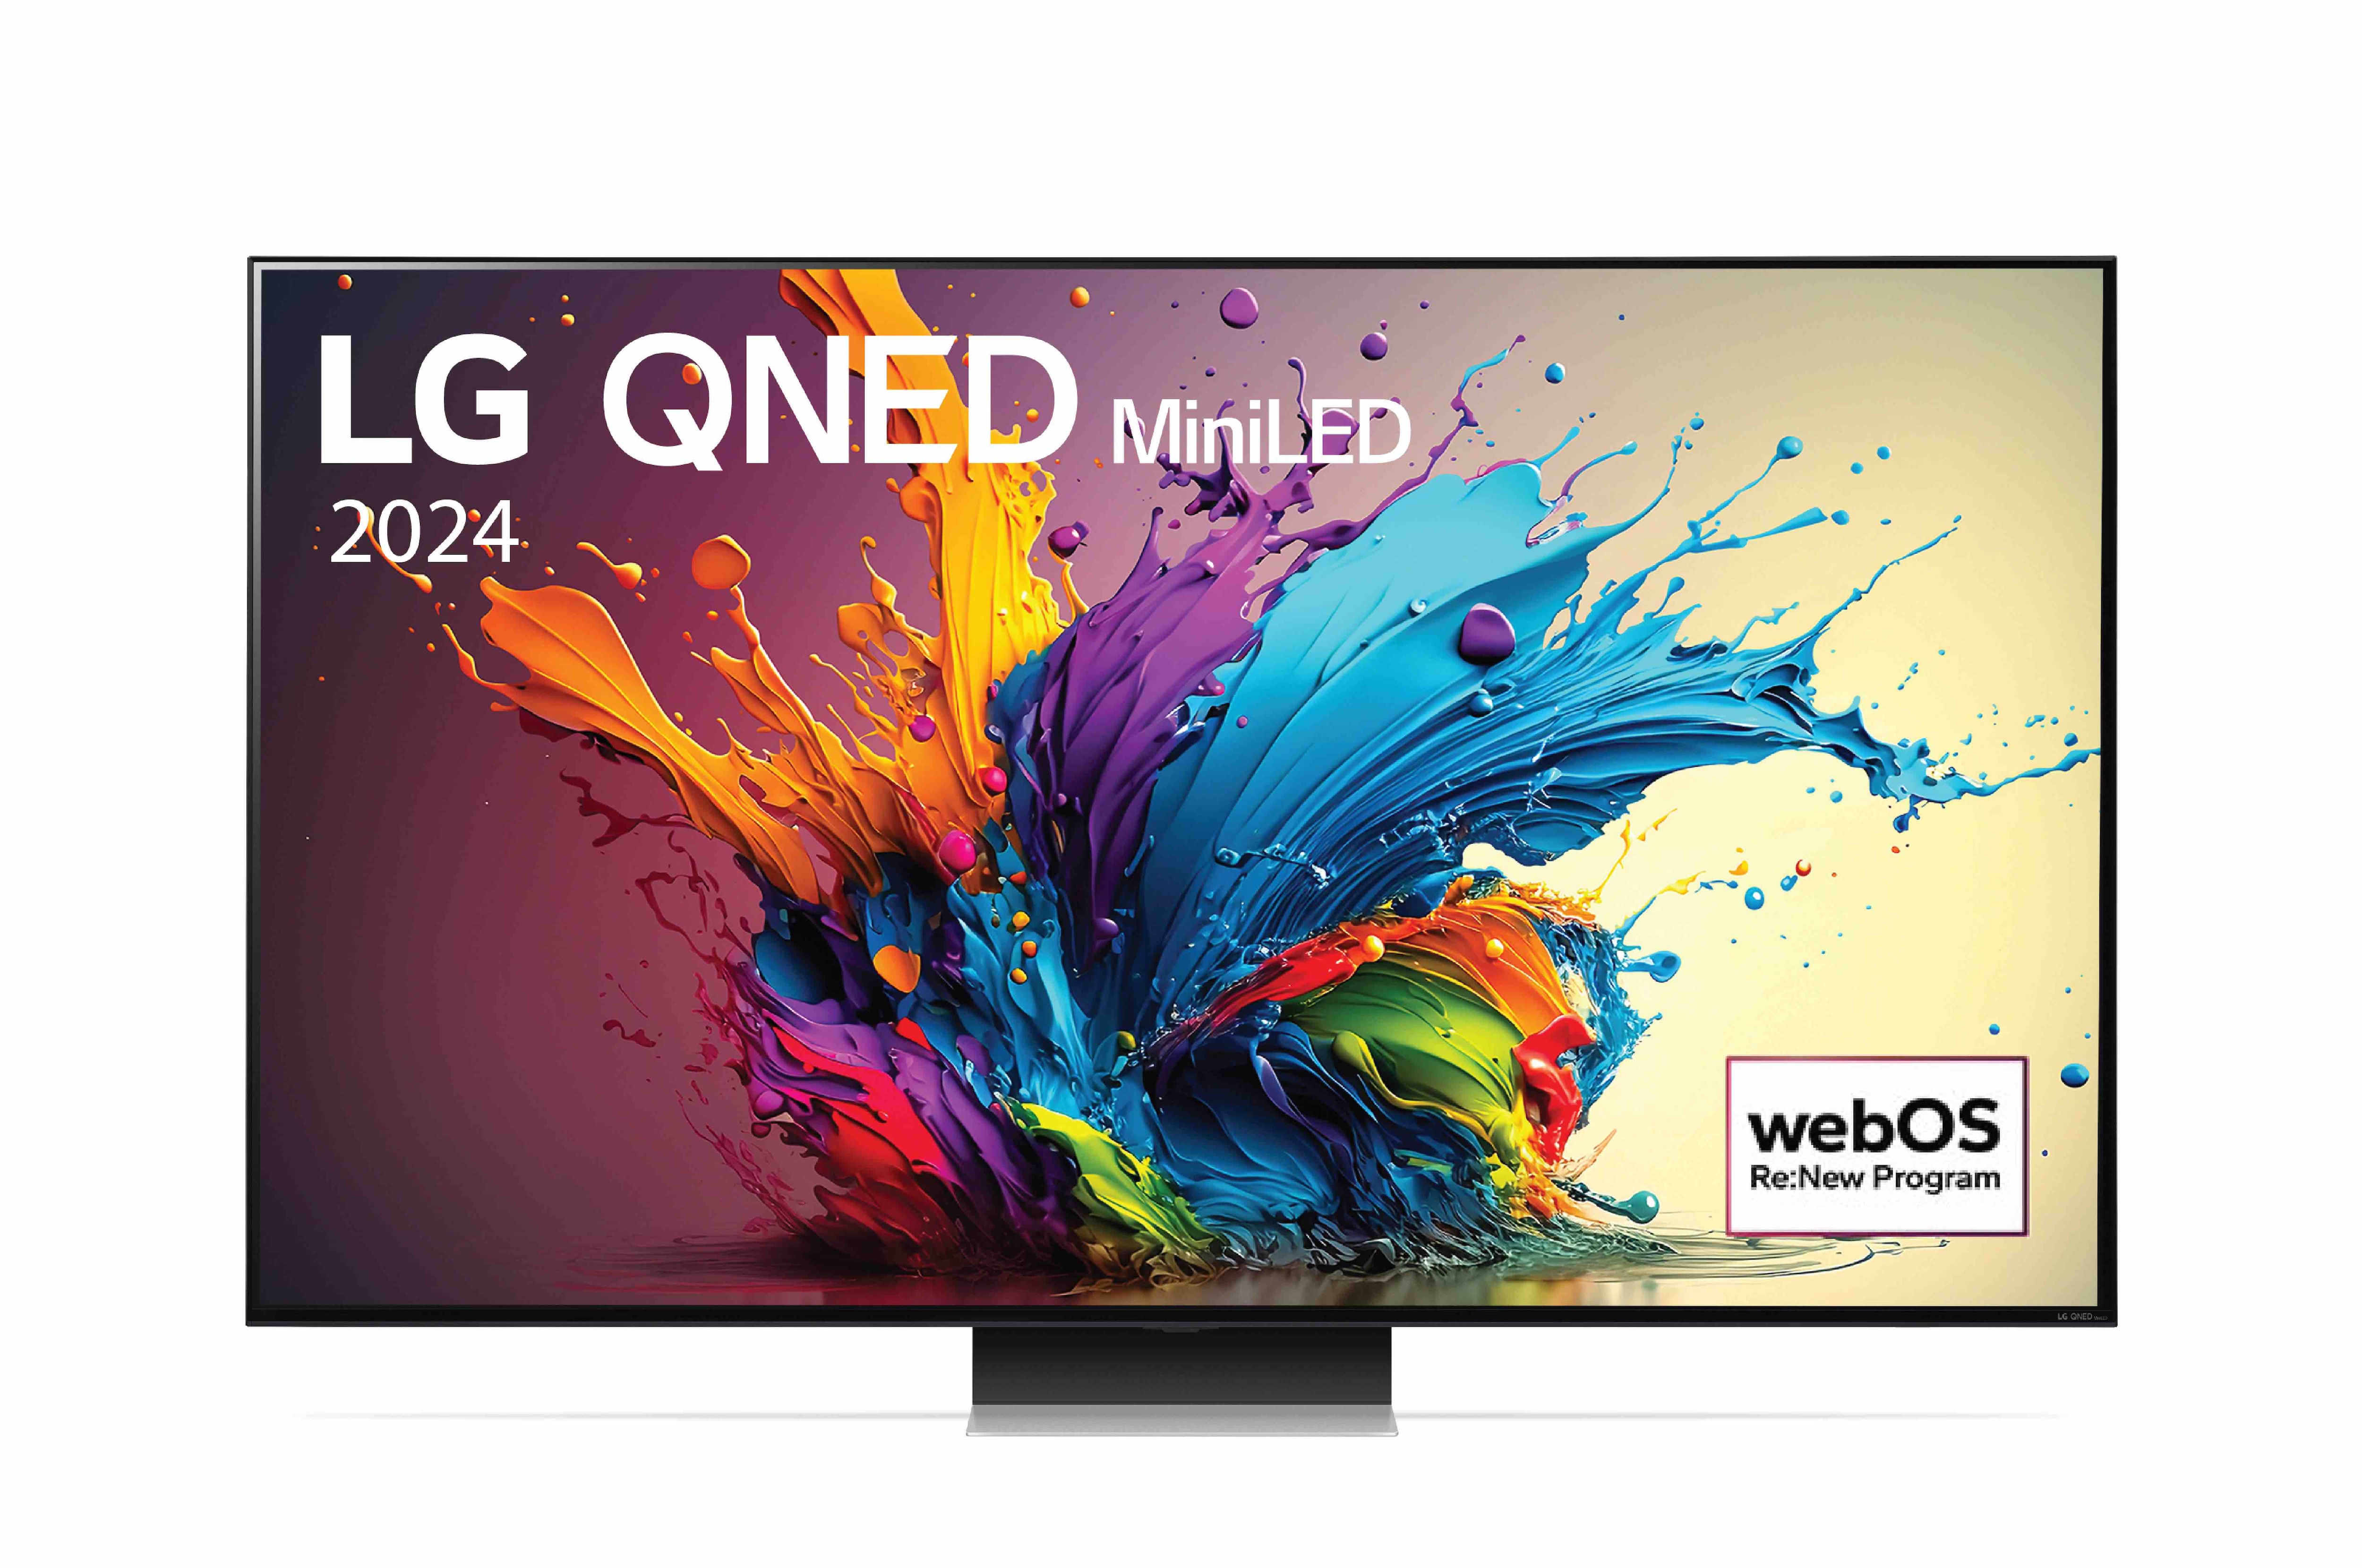 LG TV LG QNED 86 inch 86QNED91TSA, Mặt trước của TV LG QNED, QNED91 với dòng chữ của LG QNED MiniLED, 2024 và logo webOS Re:New Program trên màn hình, 86QNED91TSA